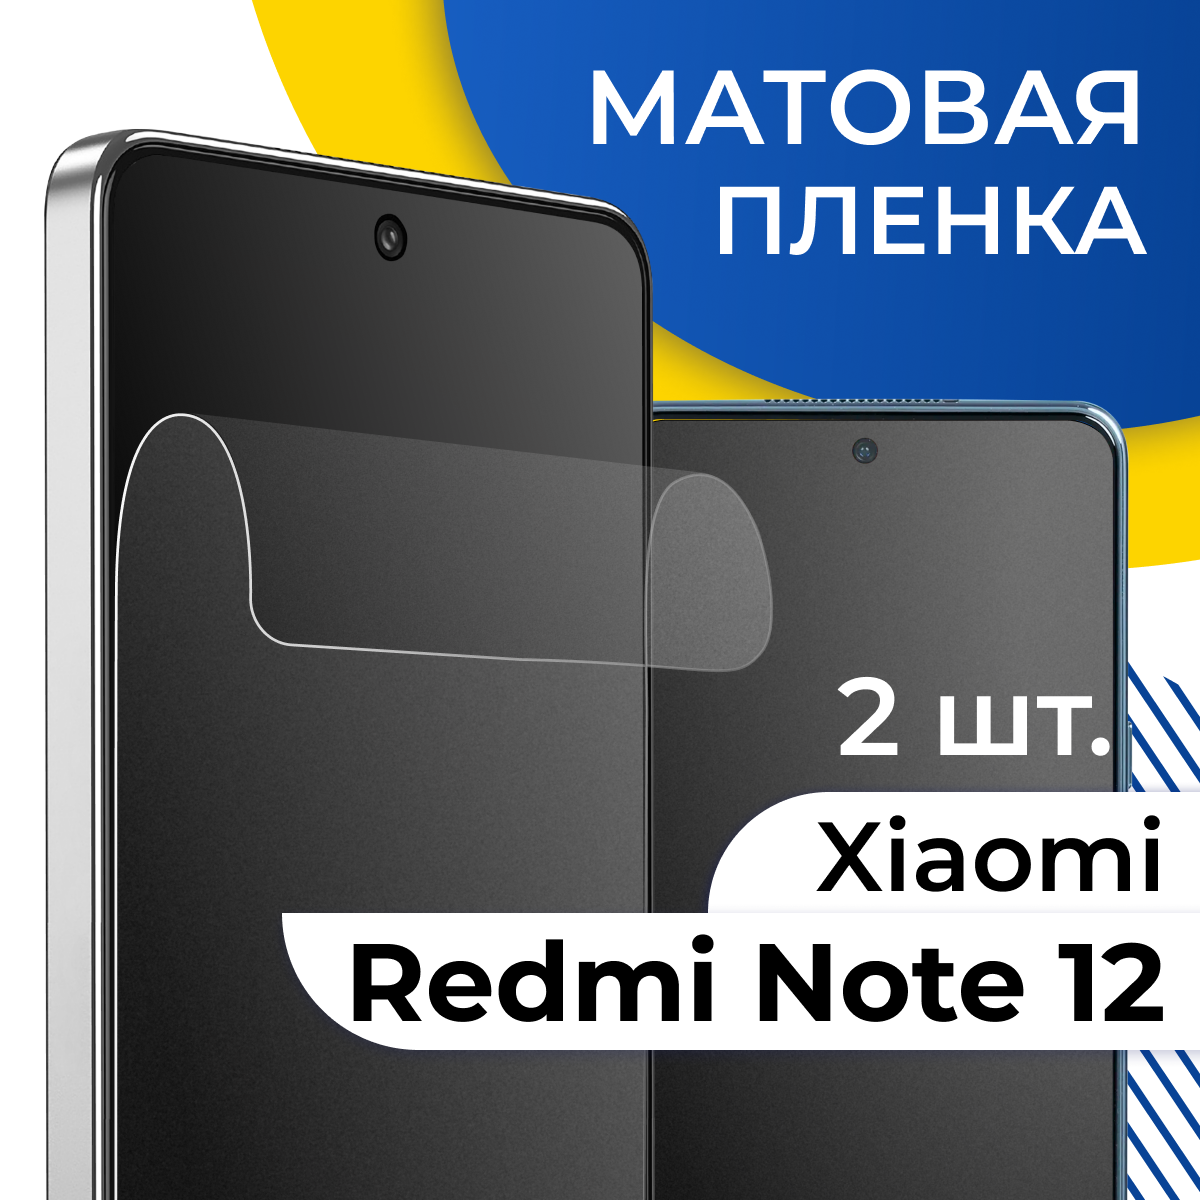 Комплект 2 шт. Матовая пленка для Xiaomi Redmi Note 12 / Гидрогелевая защитная пленка на Сяоми Редми Нот 12